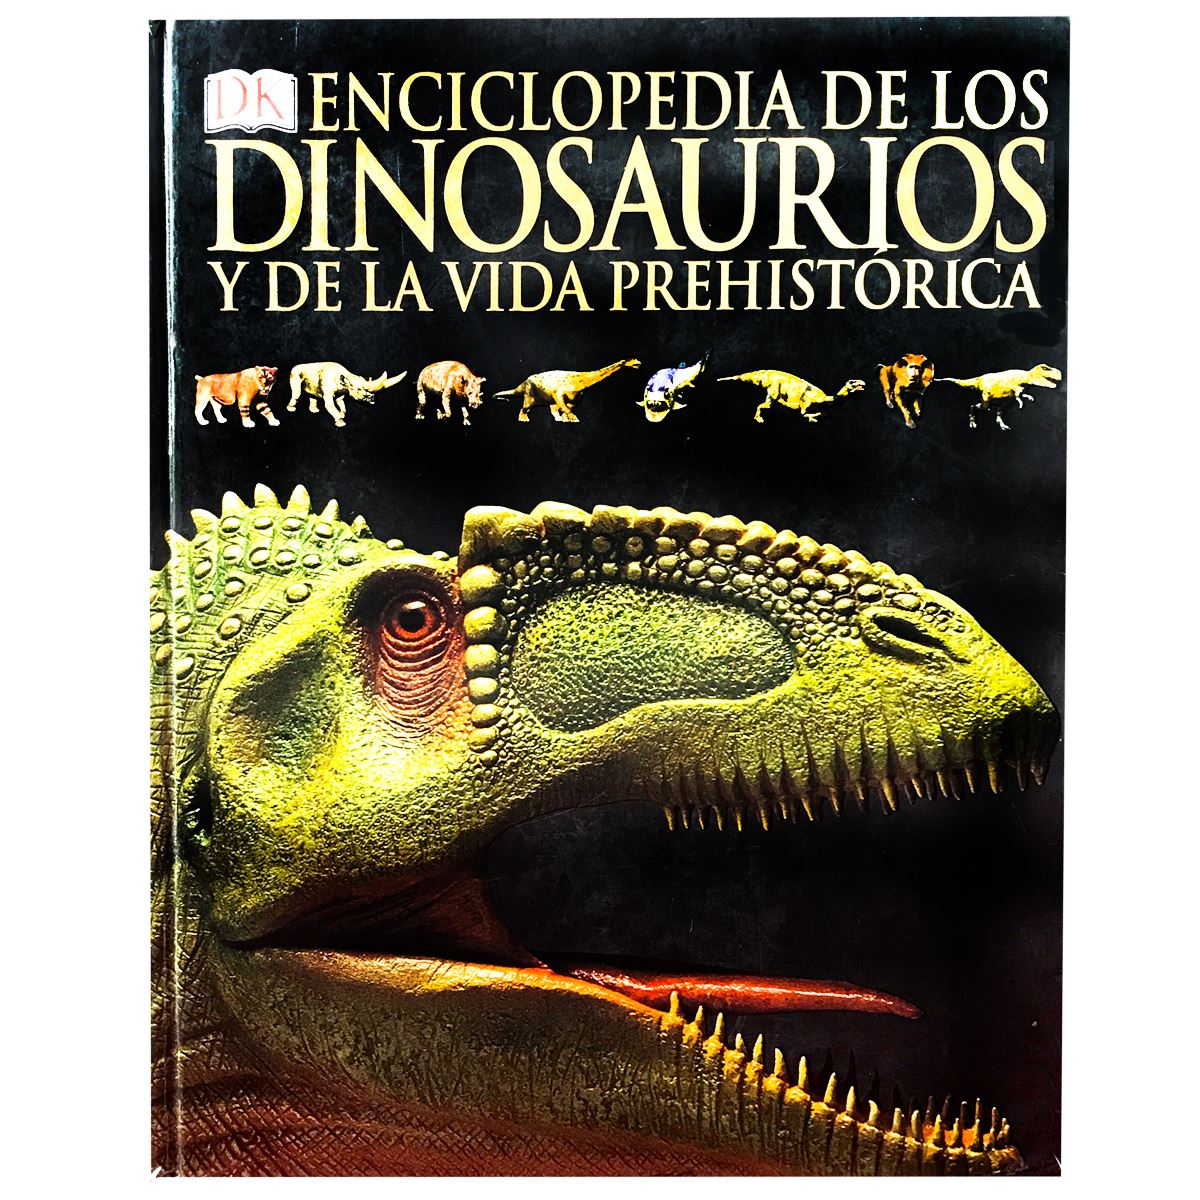 Dinosaurios, El conocimiento